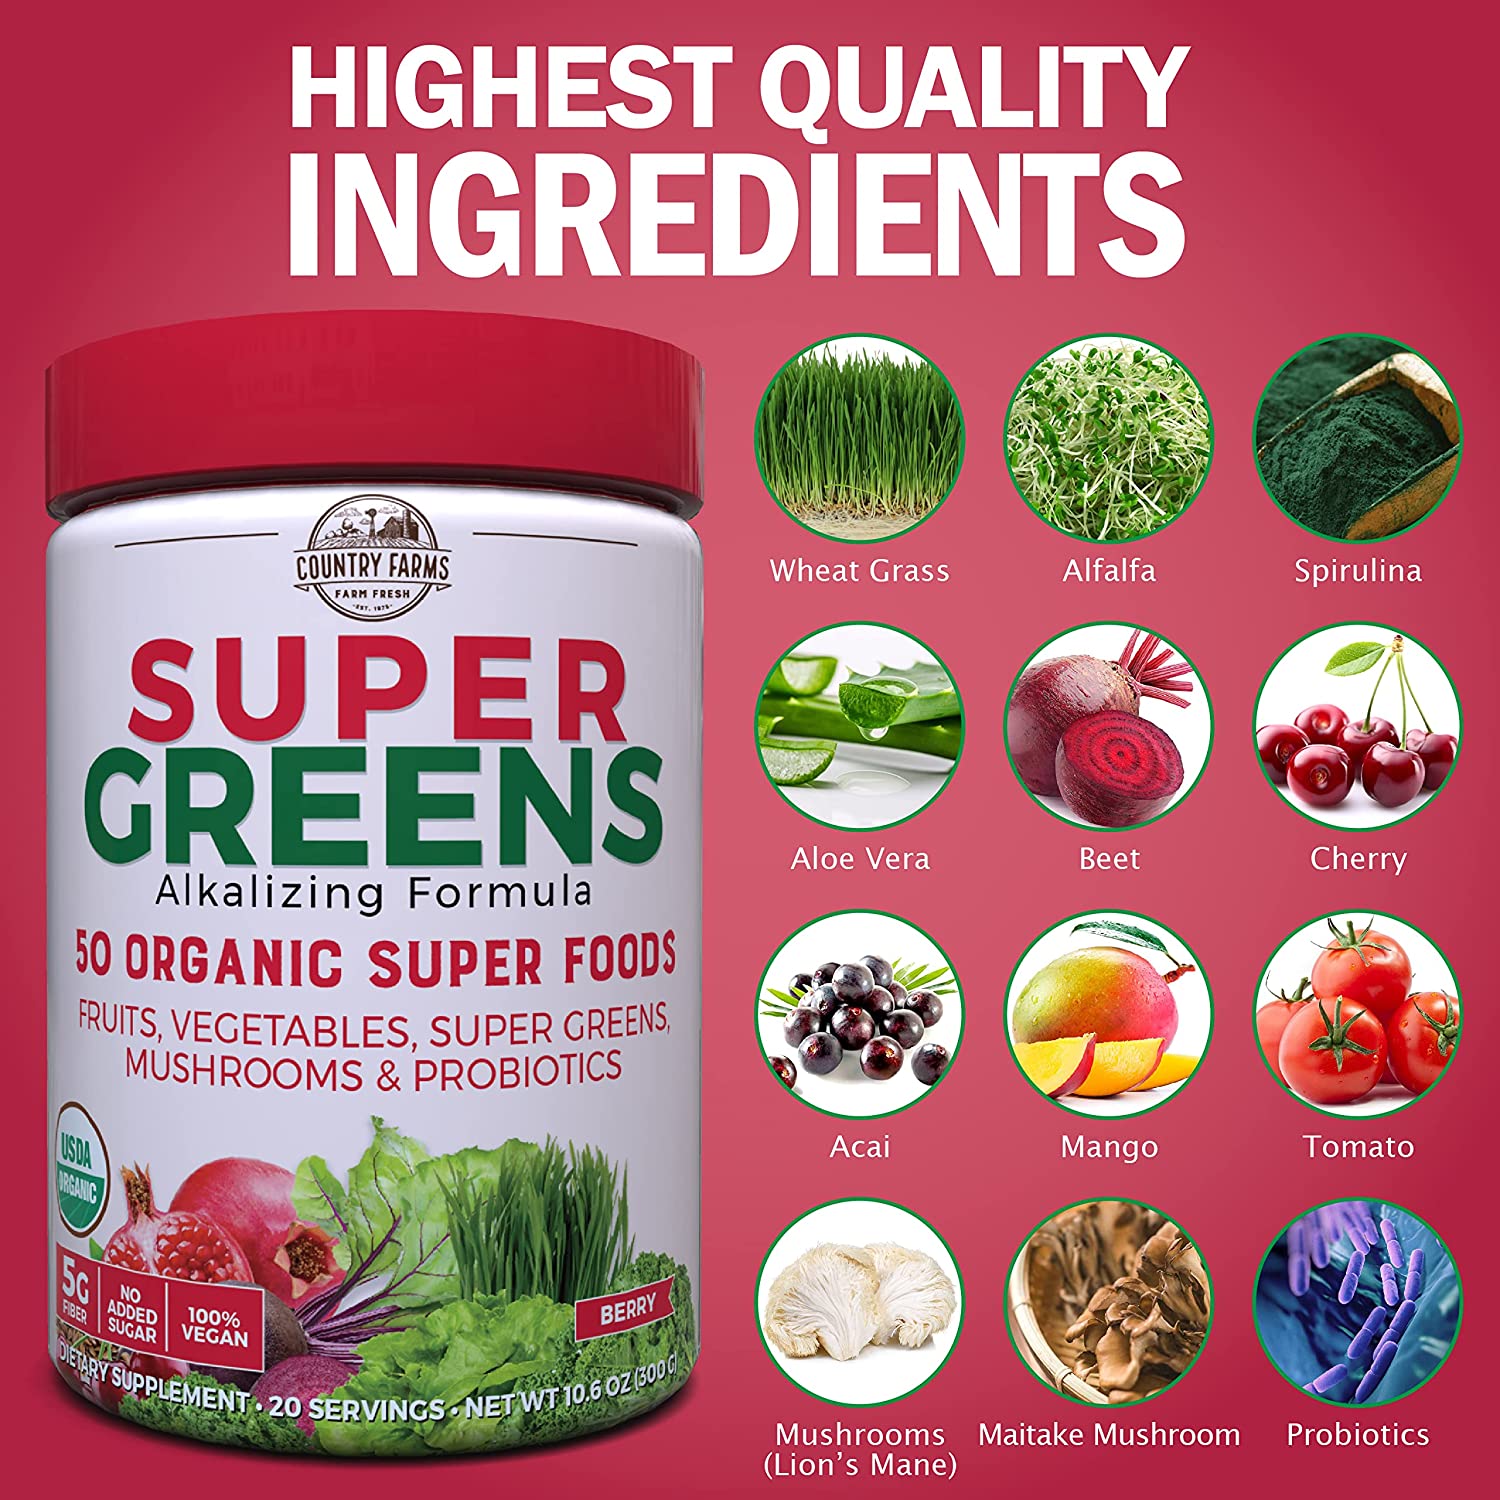 [Hoàn Tiền 15%]Hỗn hợp 50 siêu thực phẩm hữu cơ Country Farms Super Greens 300g